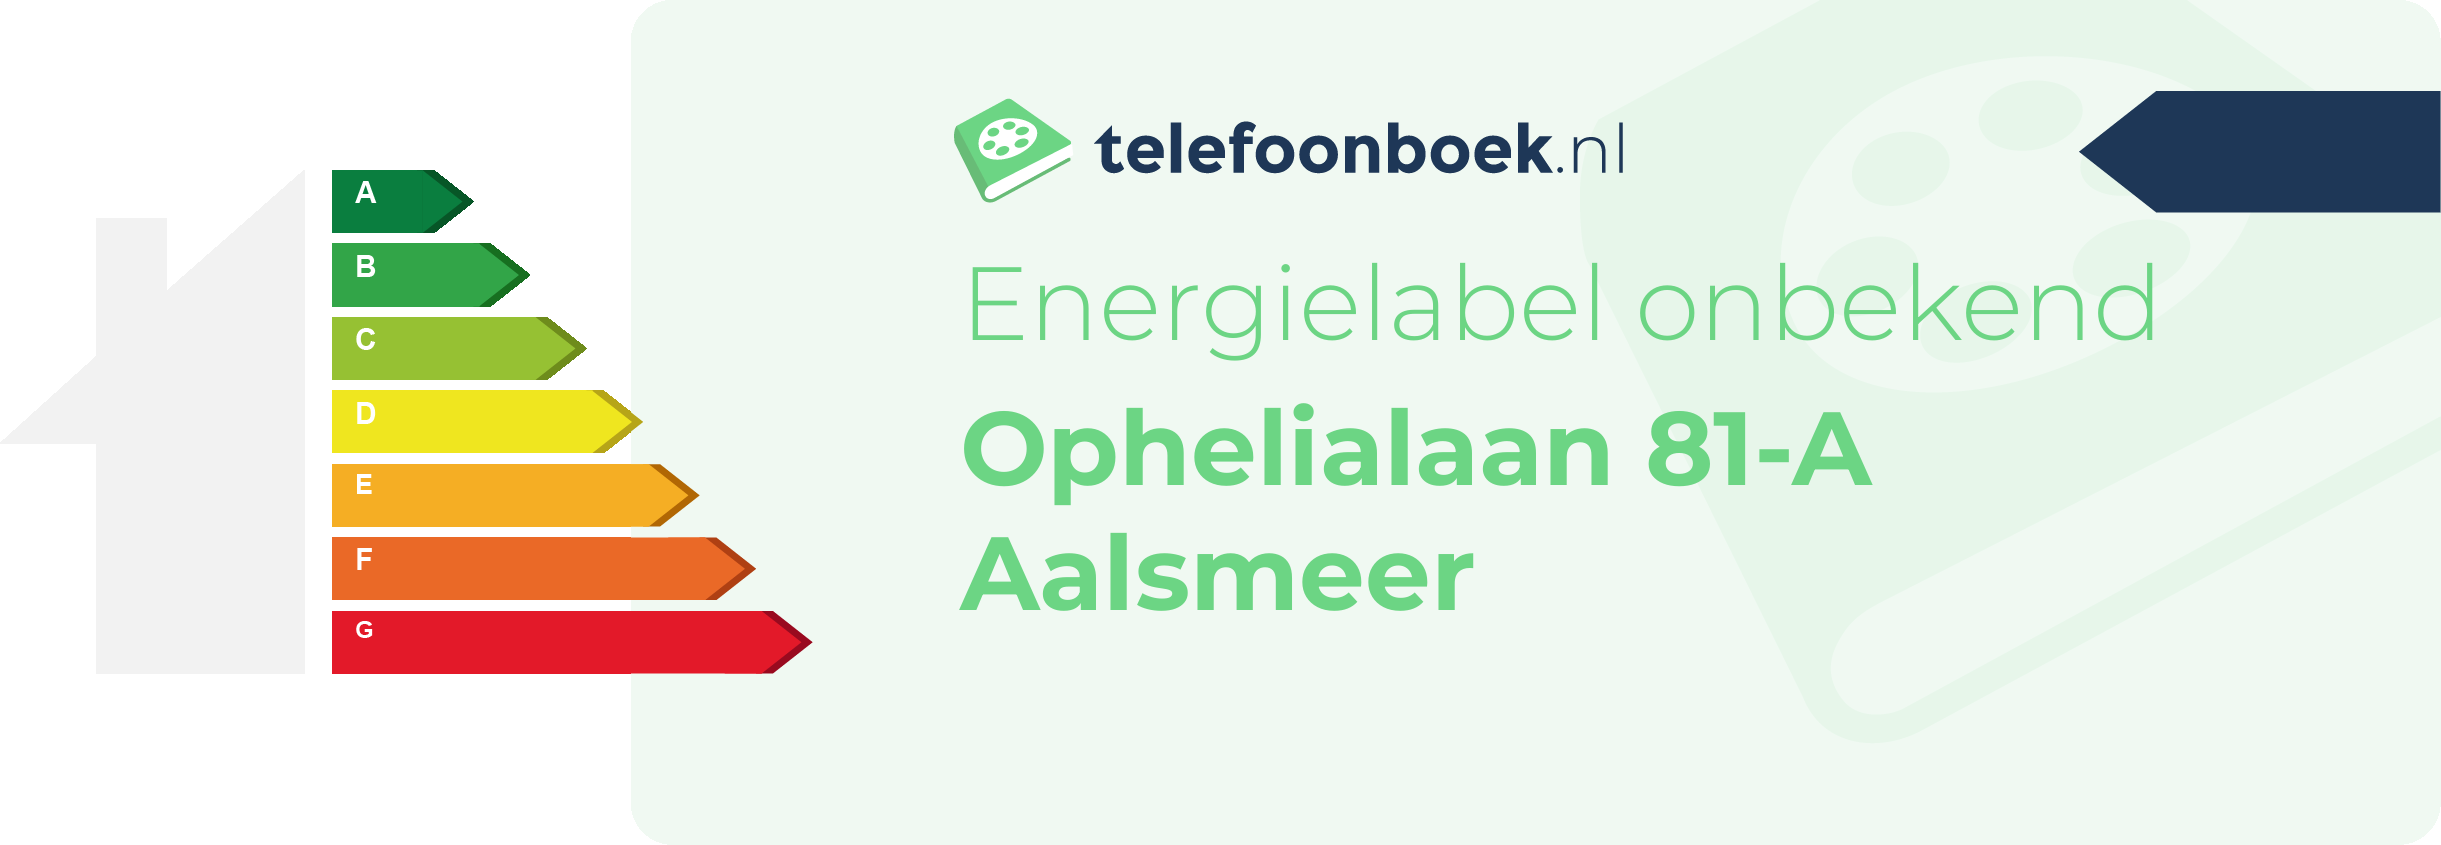 Energielabel Ophelialaan 81-A Aalsmeer